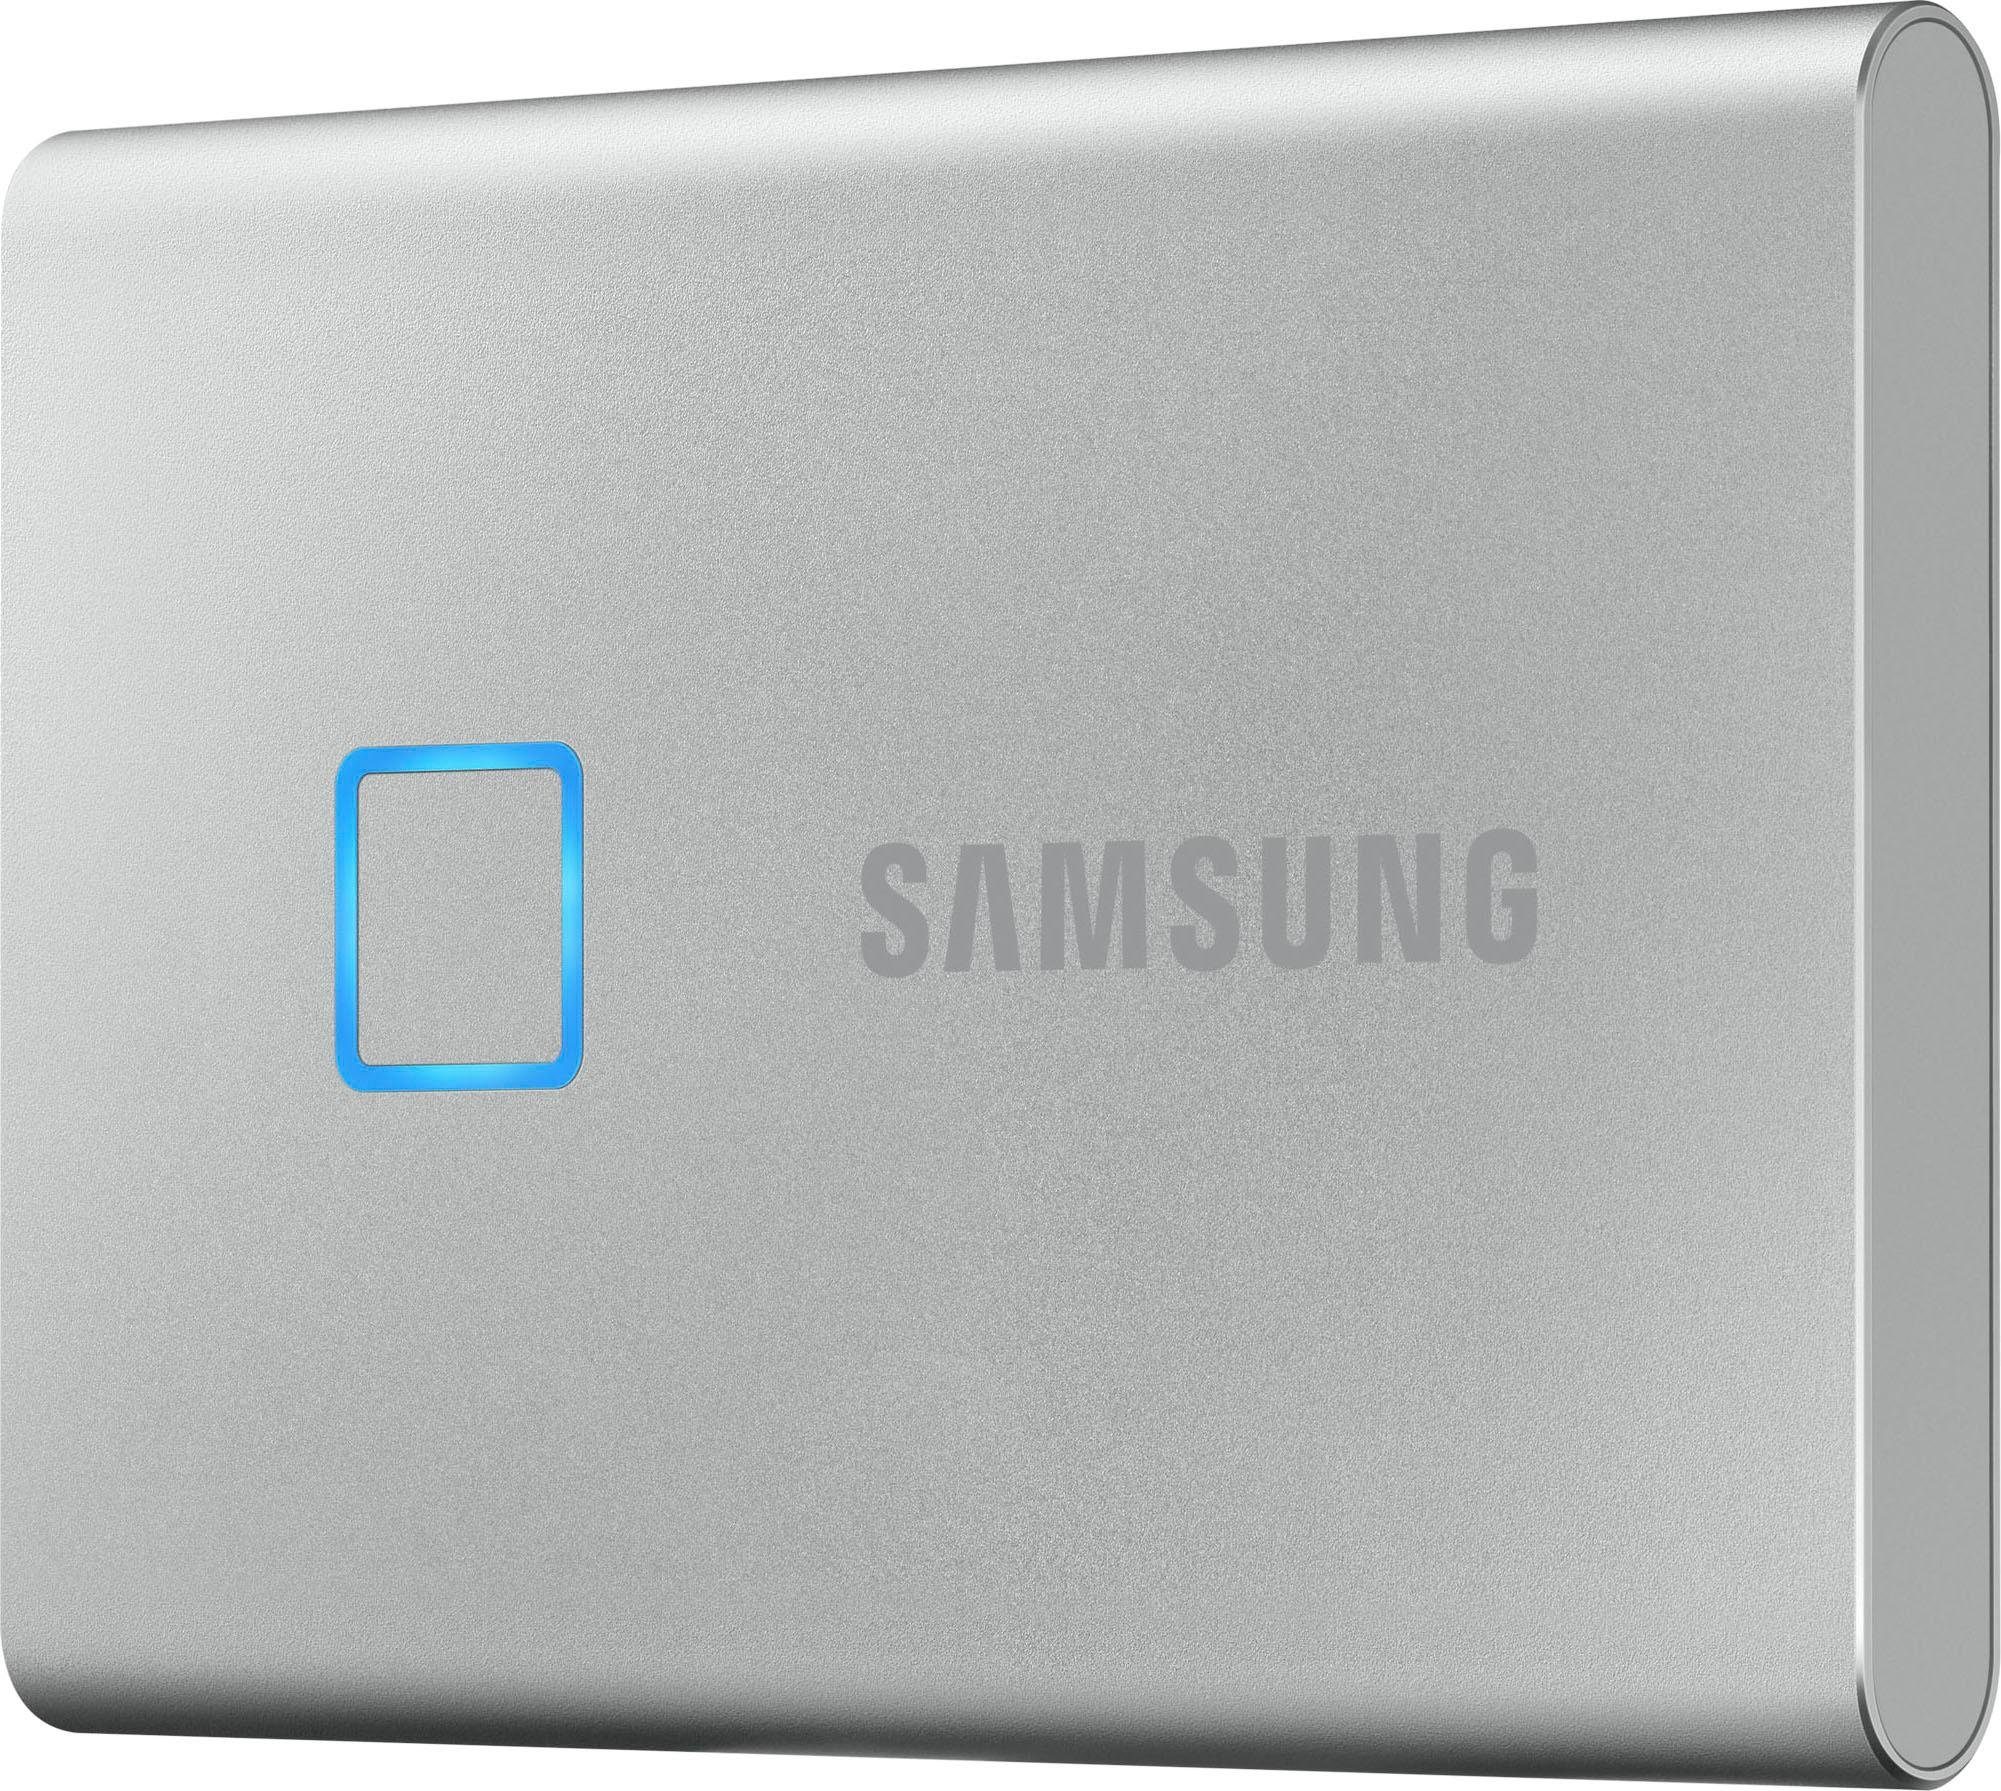 Samsung »Portable SSD T7 Touch« externe SSD (500 GB) 1050 MB/S  Lesegeschwindigkeit, 1000 MB/S Schreibgeschwindigkeit online kaufen | OTTO